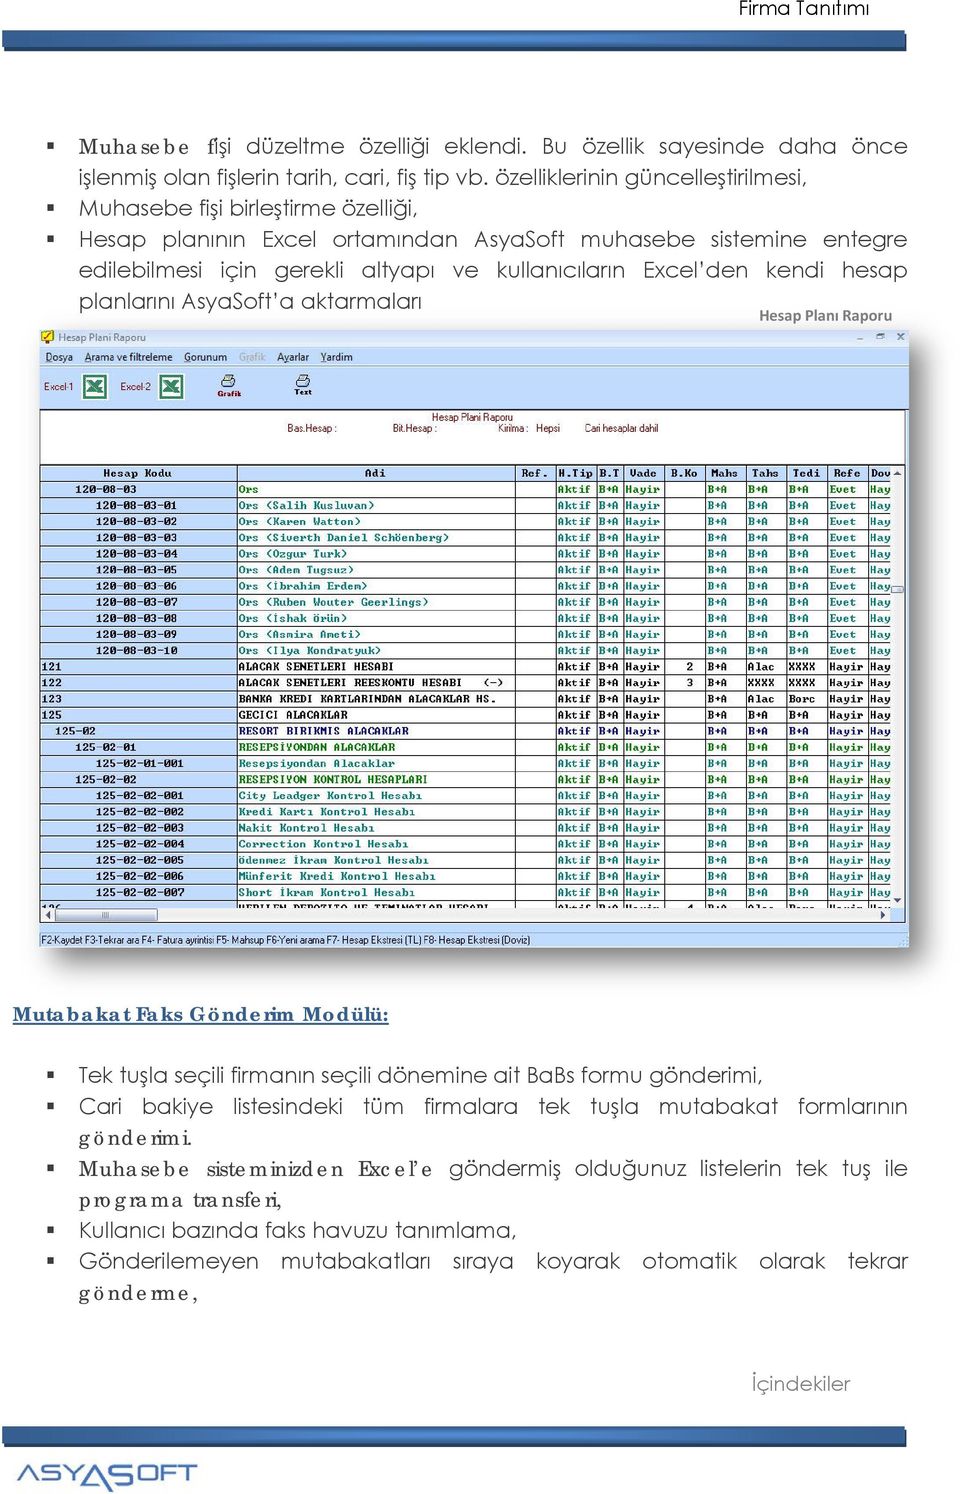 Excel den kendi hesap planlarını AsyaSoft a aktarmaları Hesap Planı Raporu Mutabakat Faks Gönderim Modülü: Tek tuşla seçili firmanın seçili dönemine ait BaBs formu gönderimi, Cari bakiye